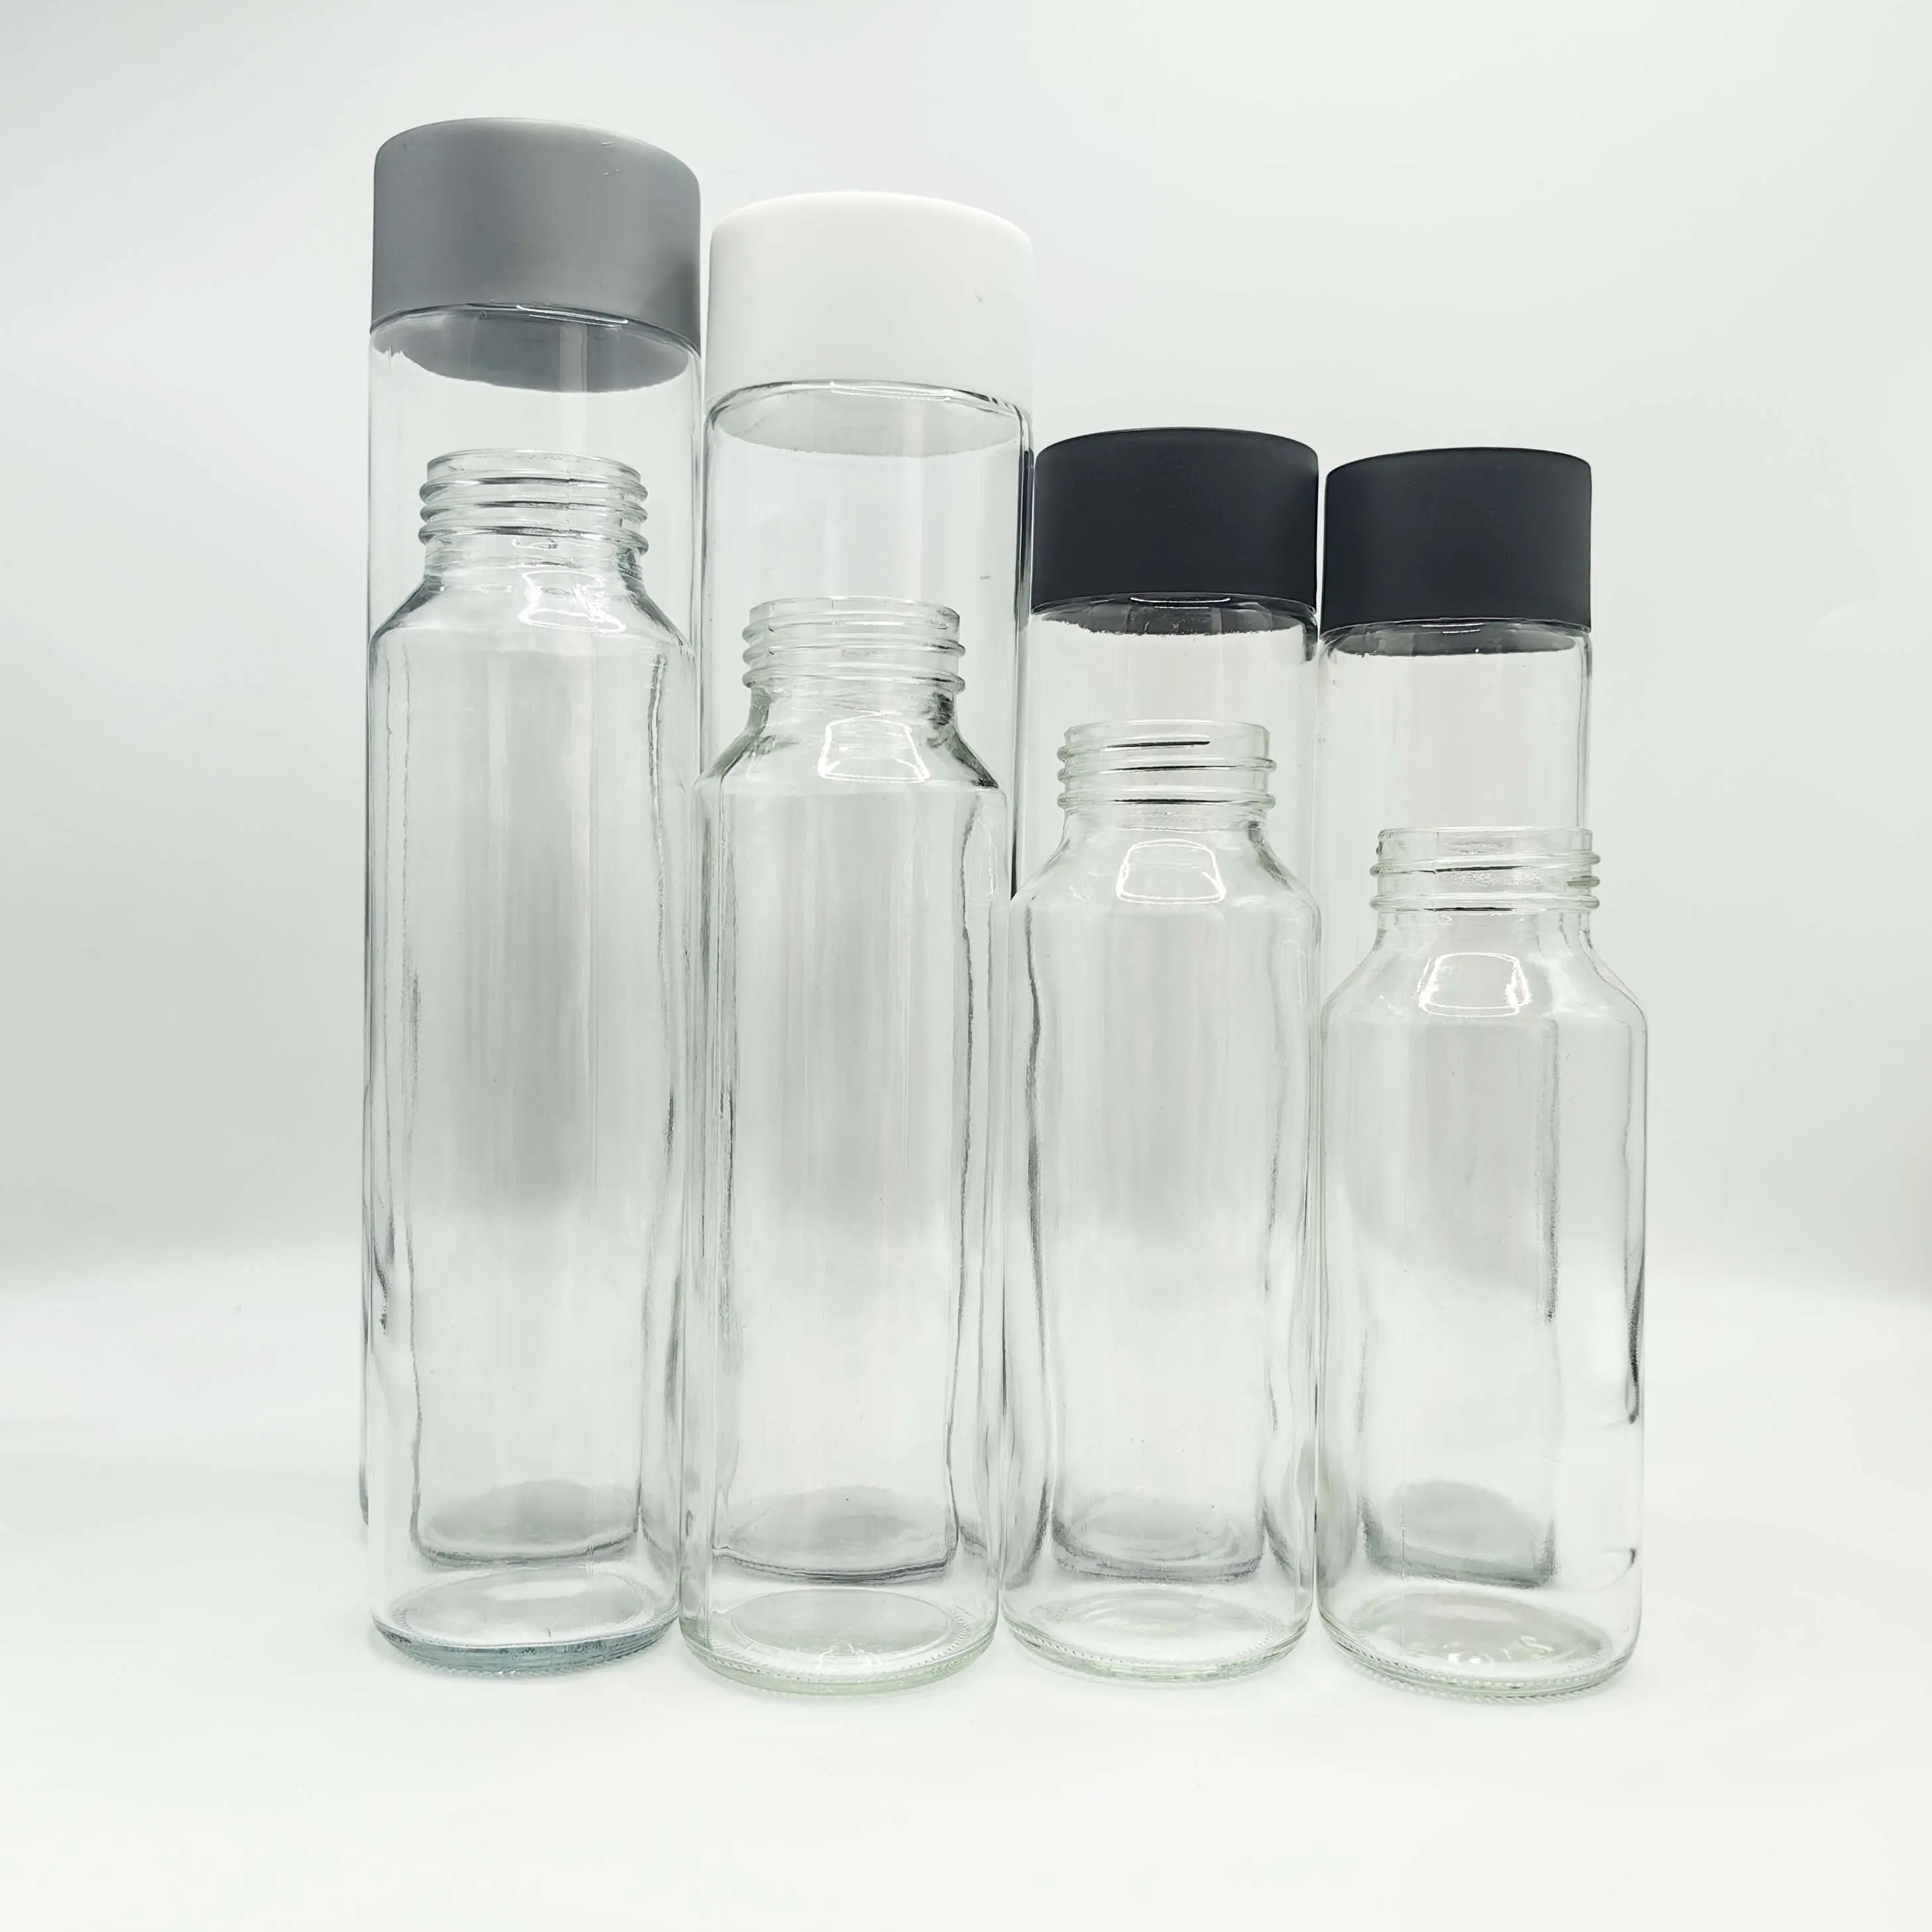 Garrafa de vidro voss vazia transparente por atacado para suco, água, leite, bebidas, refrigerantes e refrigerantes com tampa de plástico